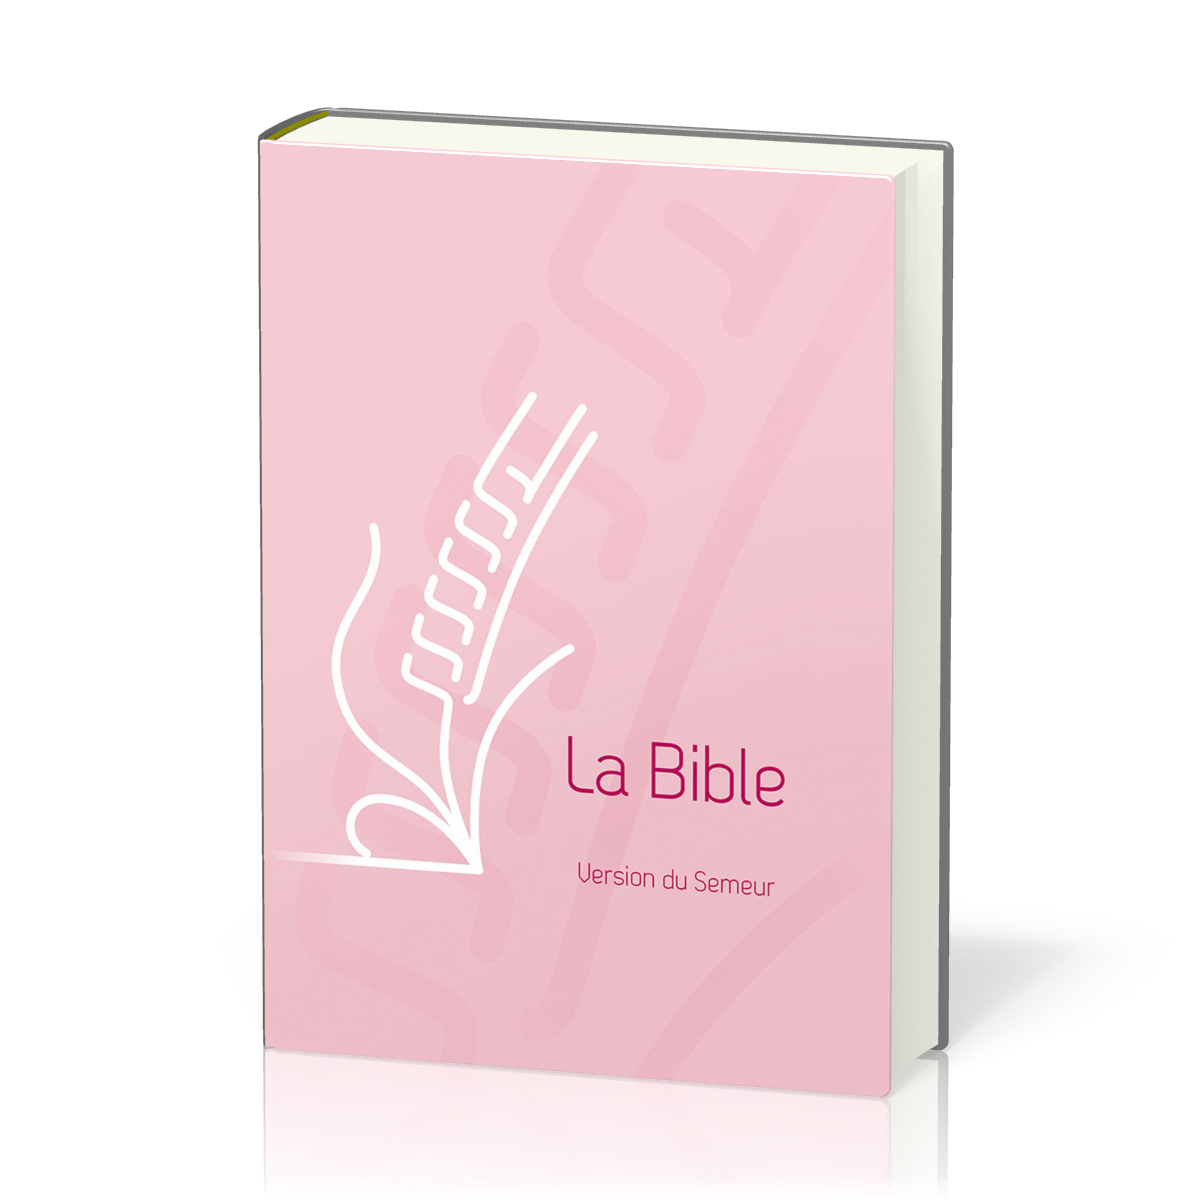 Bible Semeur 2015, couverture rigide rose illustrée